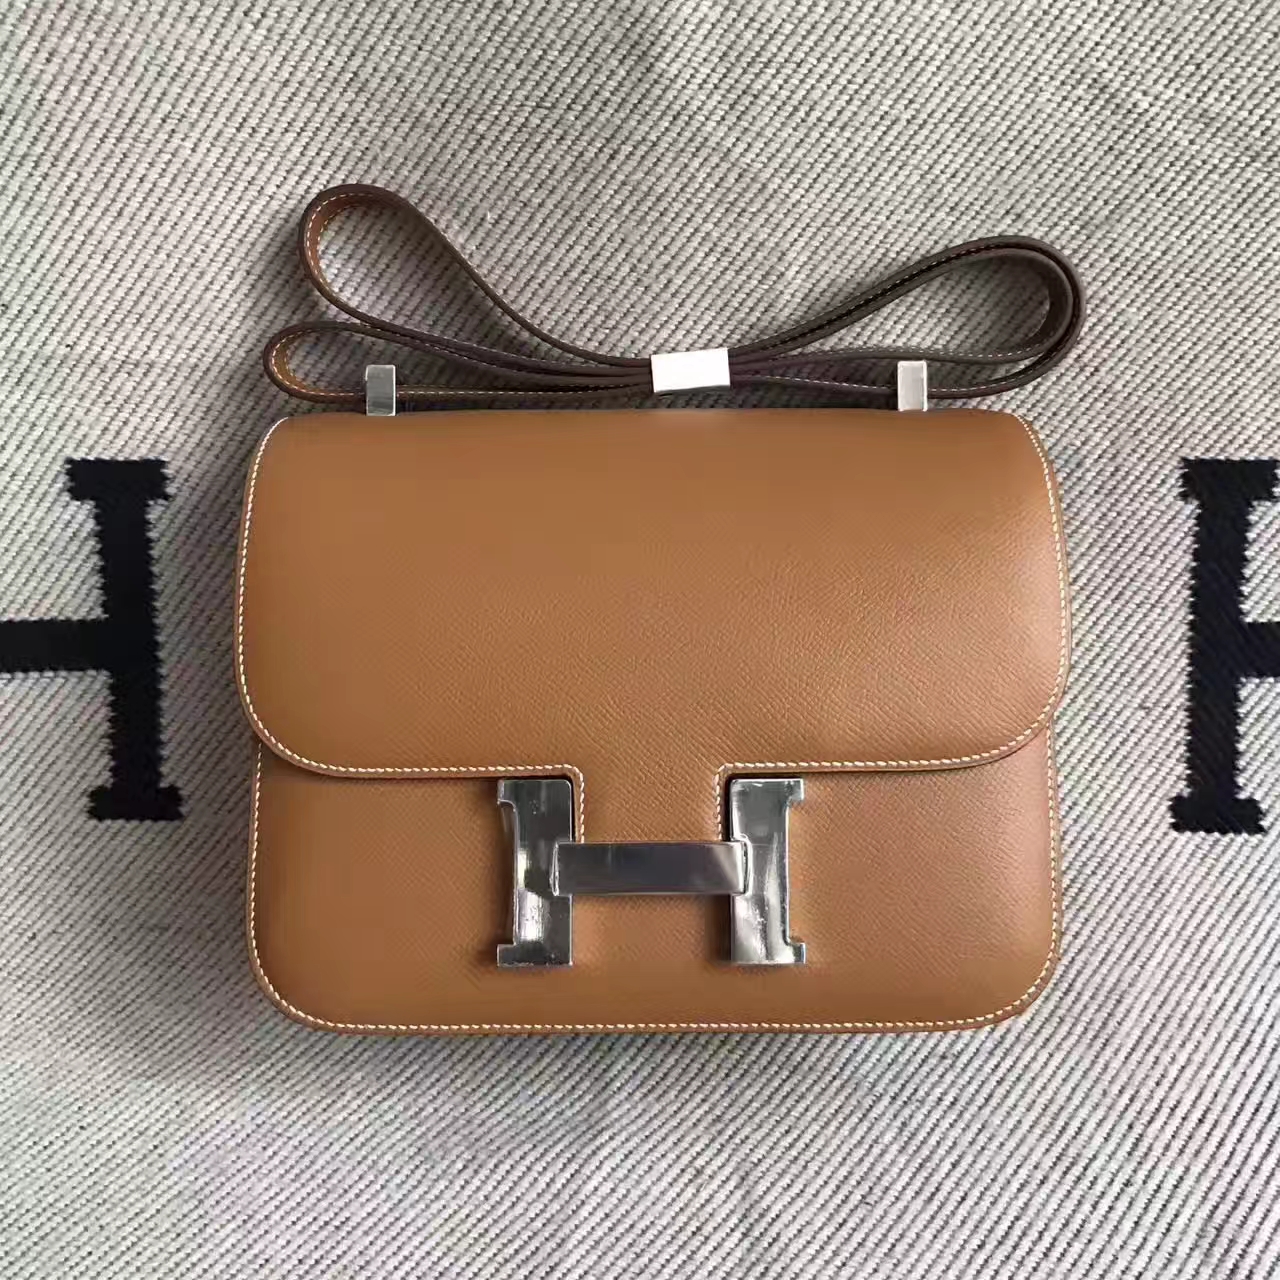 Hand Stitching Hermes CK37 Gold Epsom Leather Constance Shoulder Bag23cm